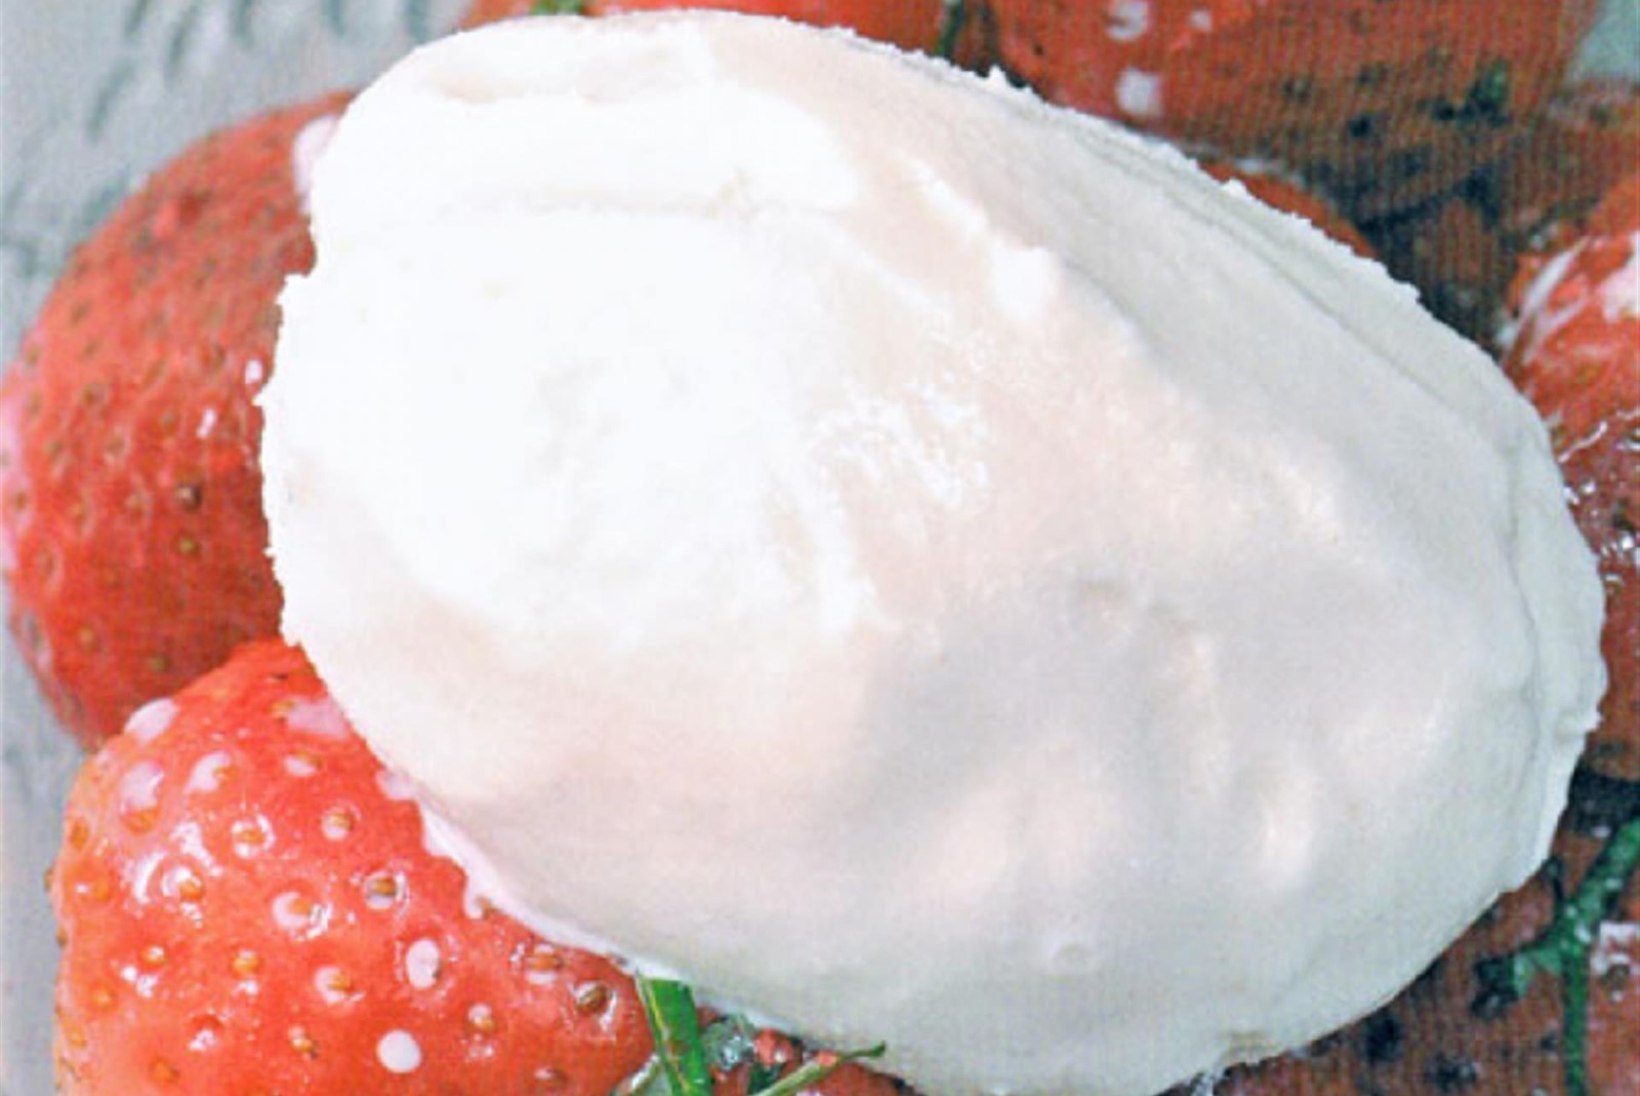 7 KERGET MAASIKAMAIUST: kõige lihtsamad viisid, kuidas maasikaid nautida